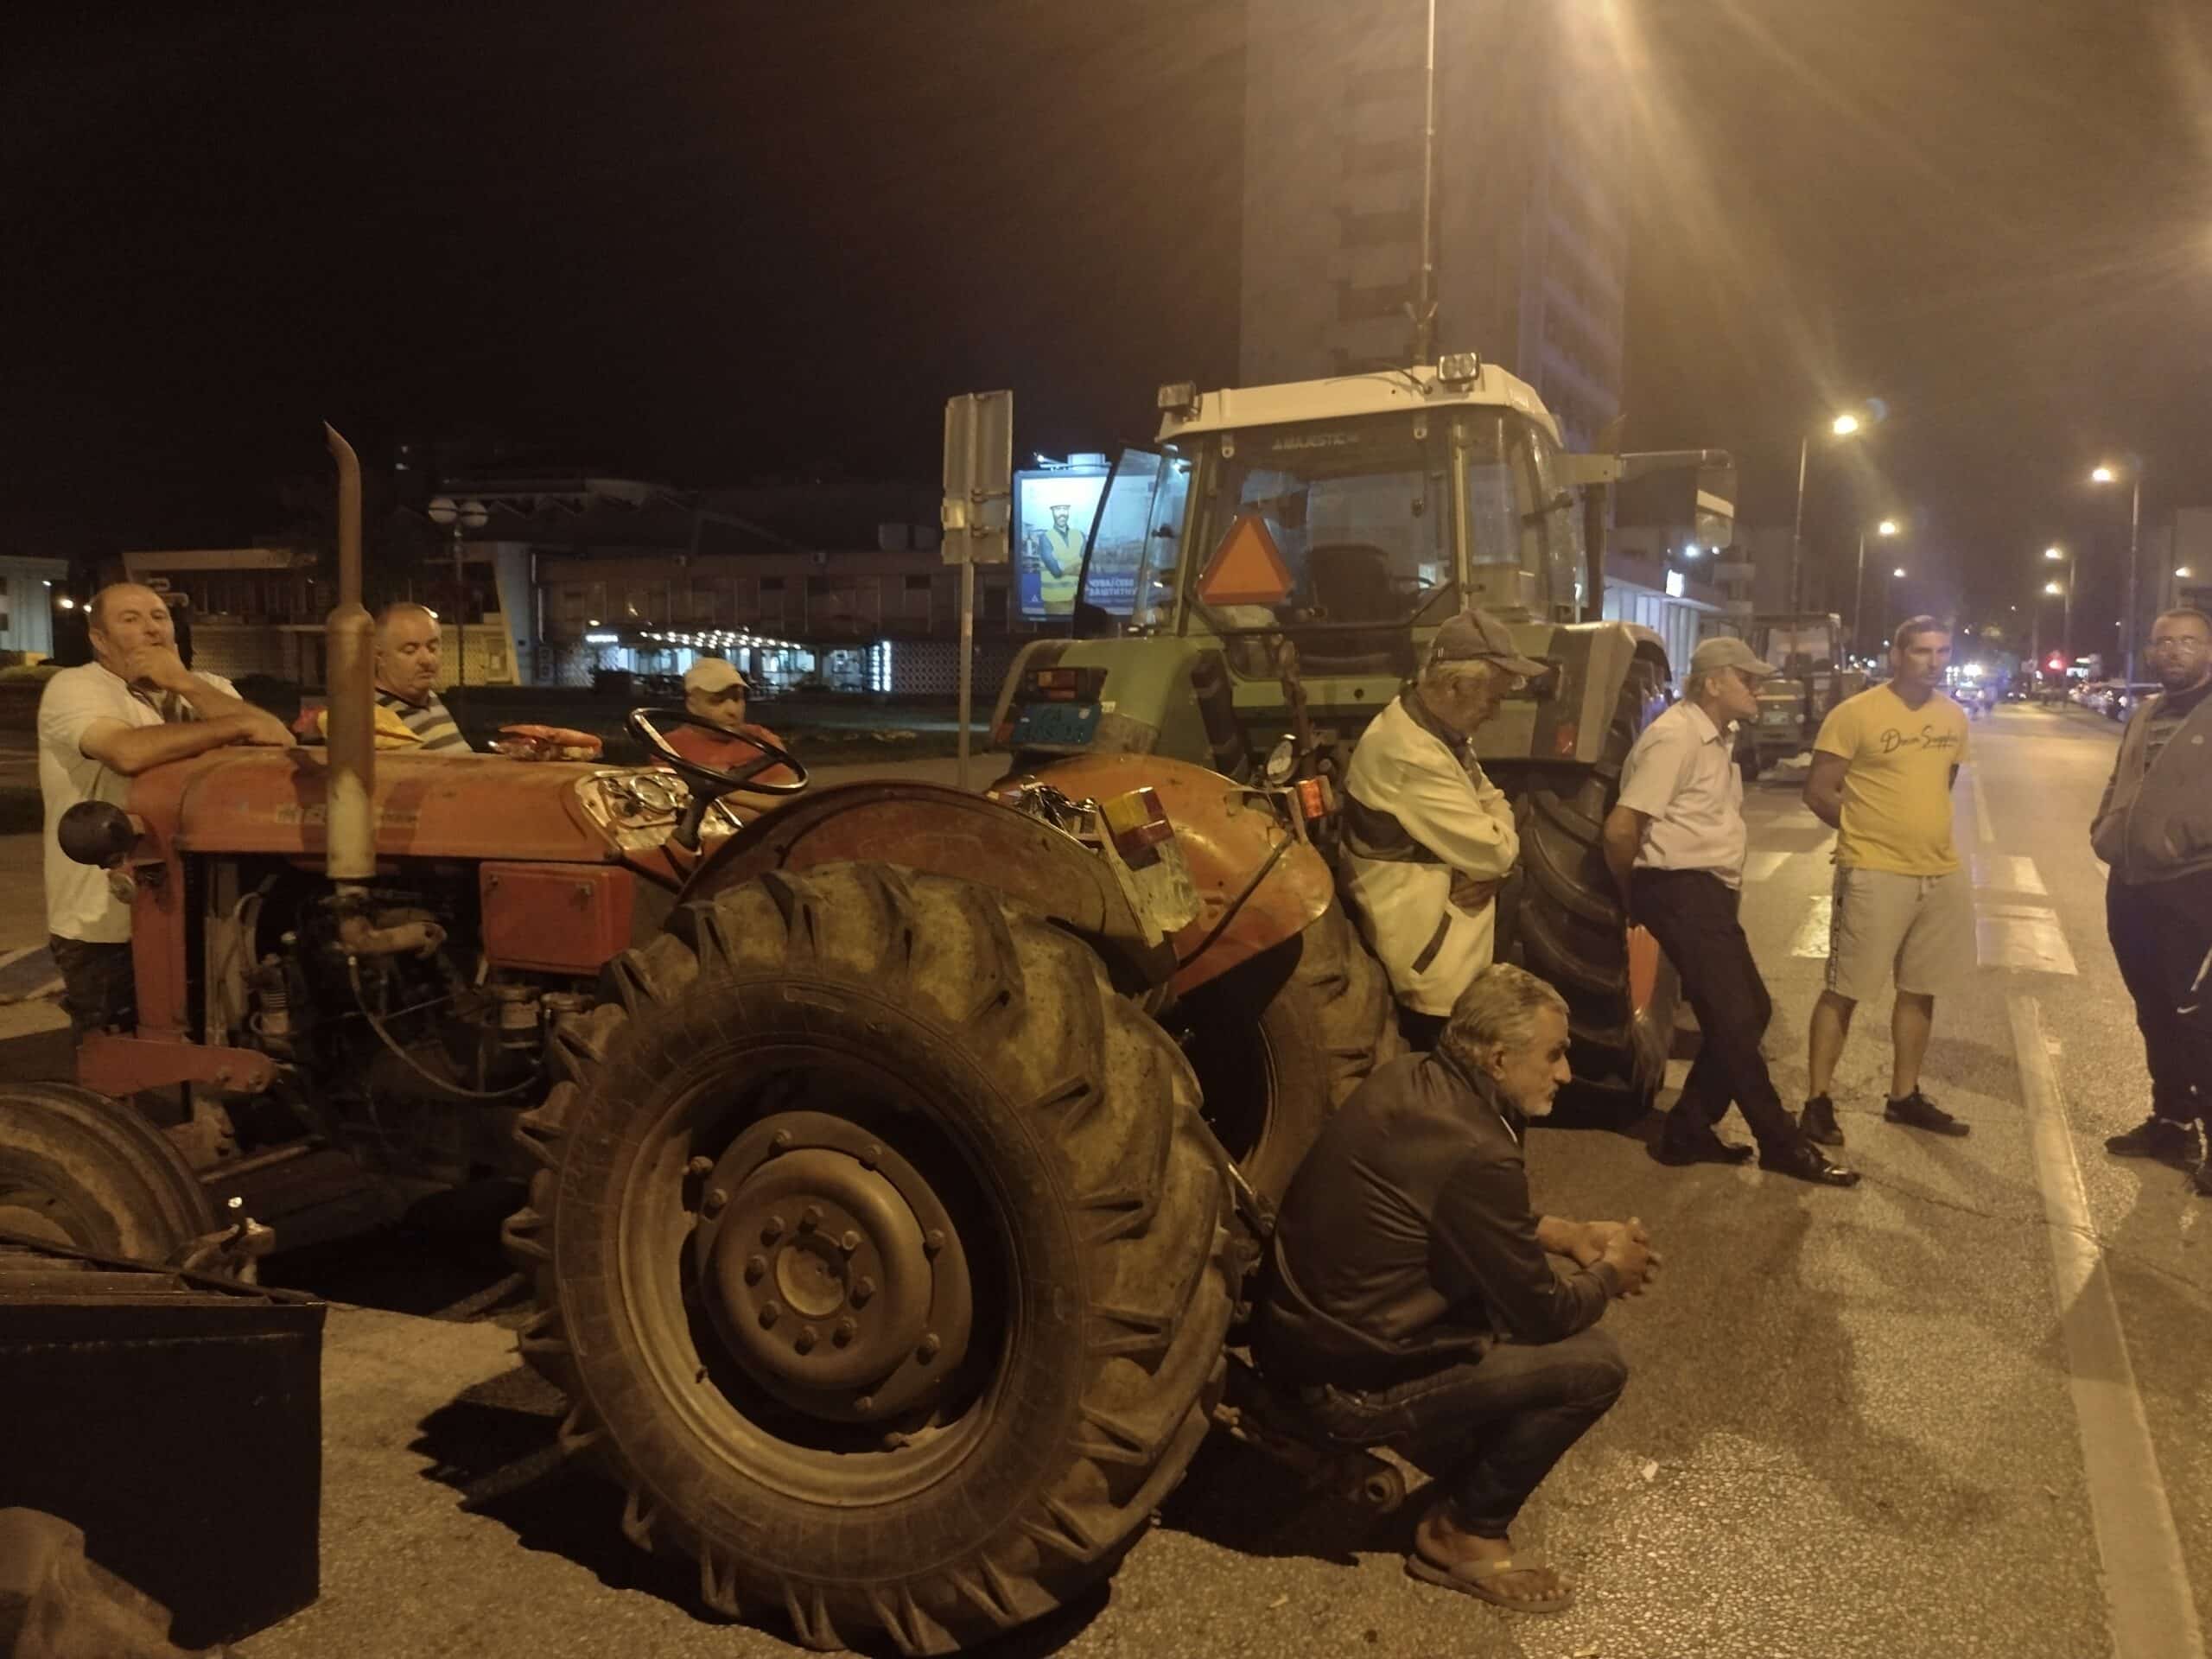 "Da l' je asfalt ili blato, Šumadinac trpi bato": Reporter Danasa proveo noć sa poljoprivrednicima u blokadi Kragujevca 3